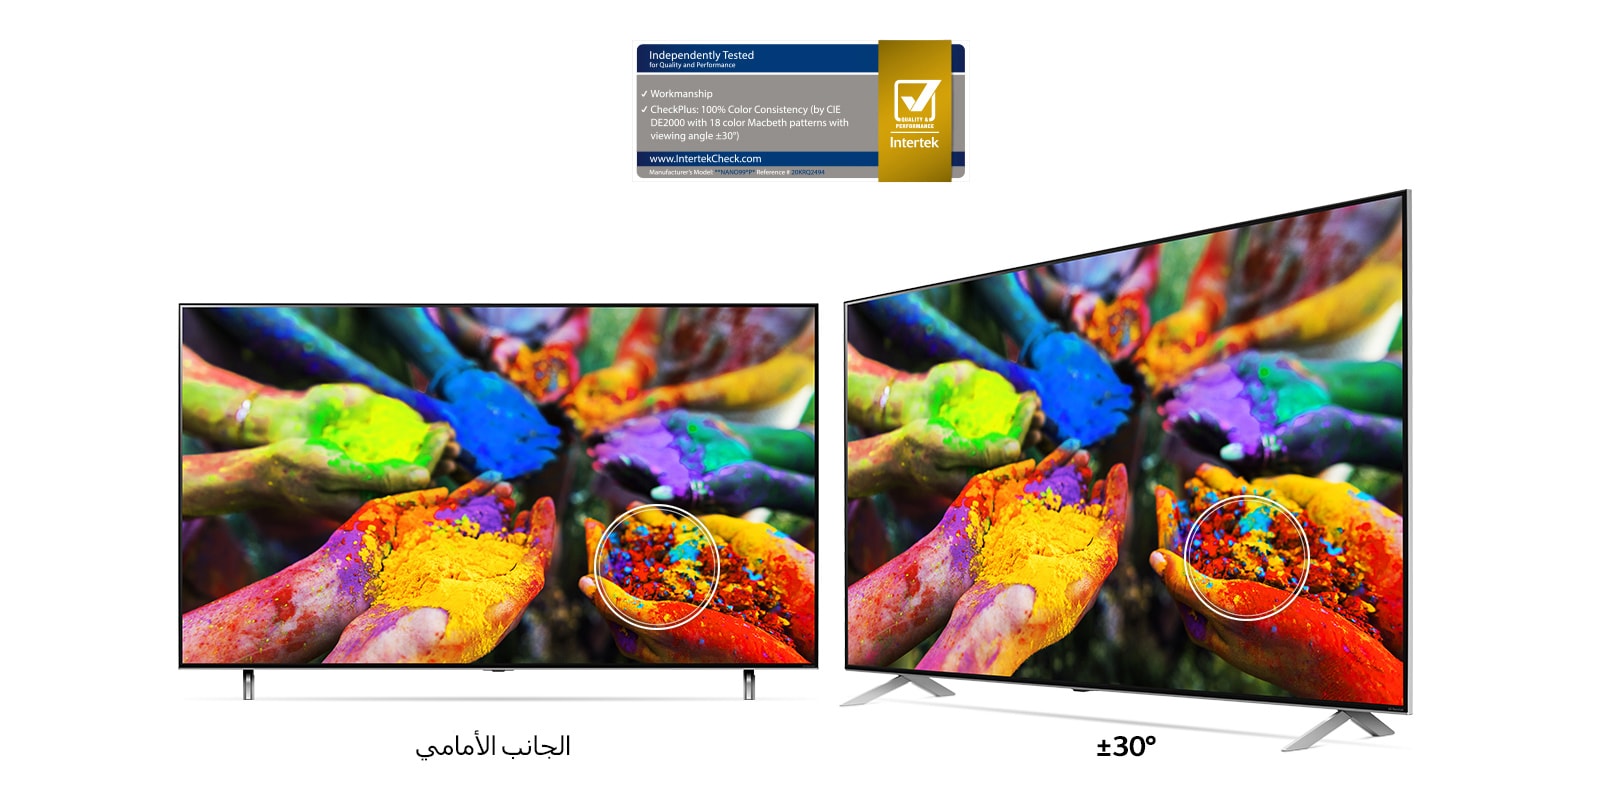 تلفازان LG NanoCell جنبًا إلى جنب يعرضان صورة للأيدي تمسك بجزيئات صبغية متعددة الألوان من الأمام وبزاوية عرض خارج بعيداً عن المركز.  تظل الصورة حية ودقيقة باستمرار من كلا الزاويتين. 